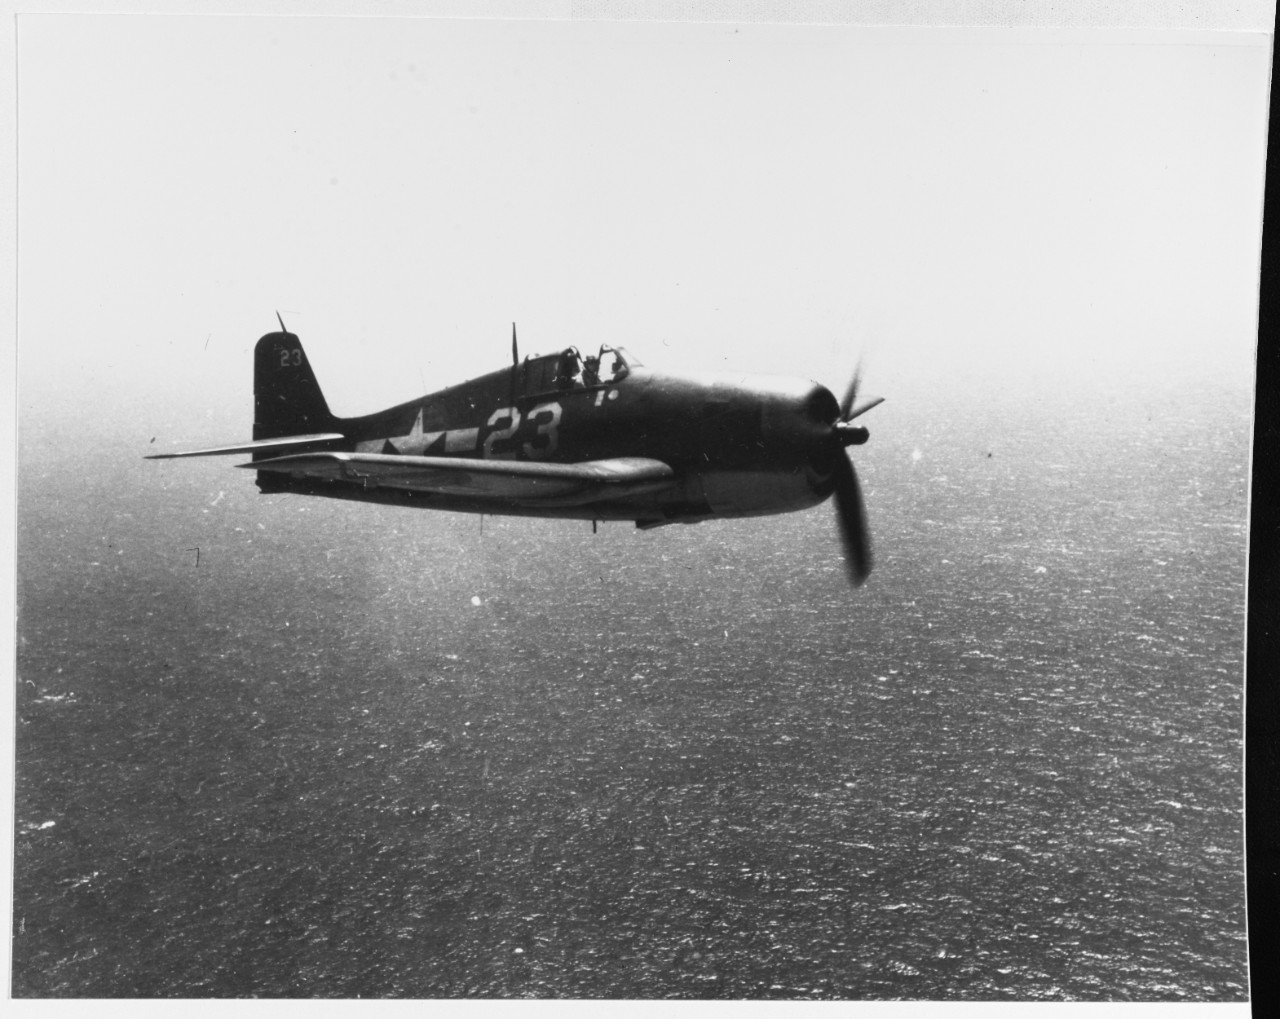 Grumman F6F-3 "Hellcat"